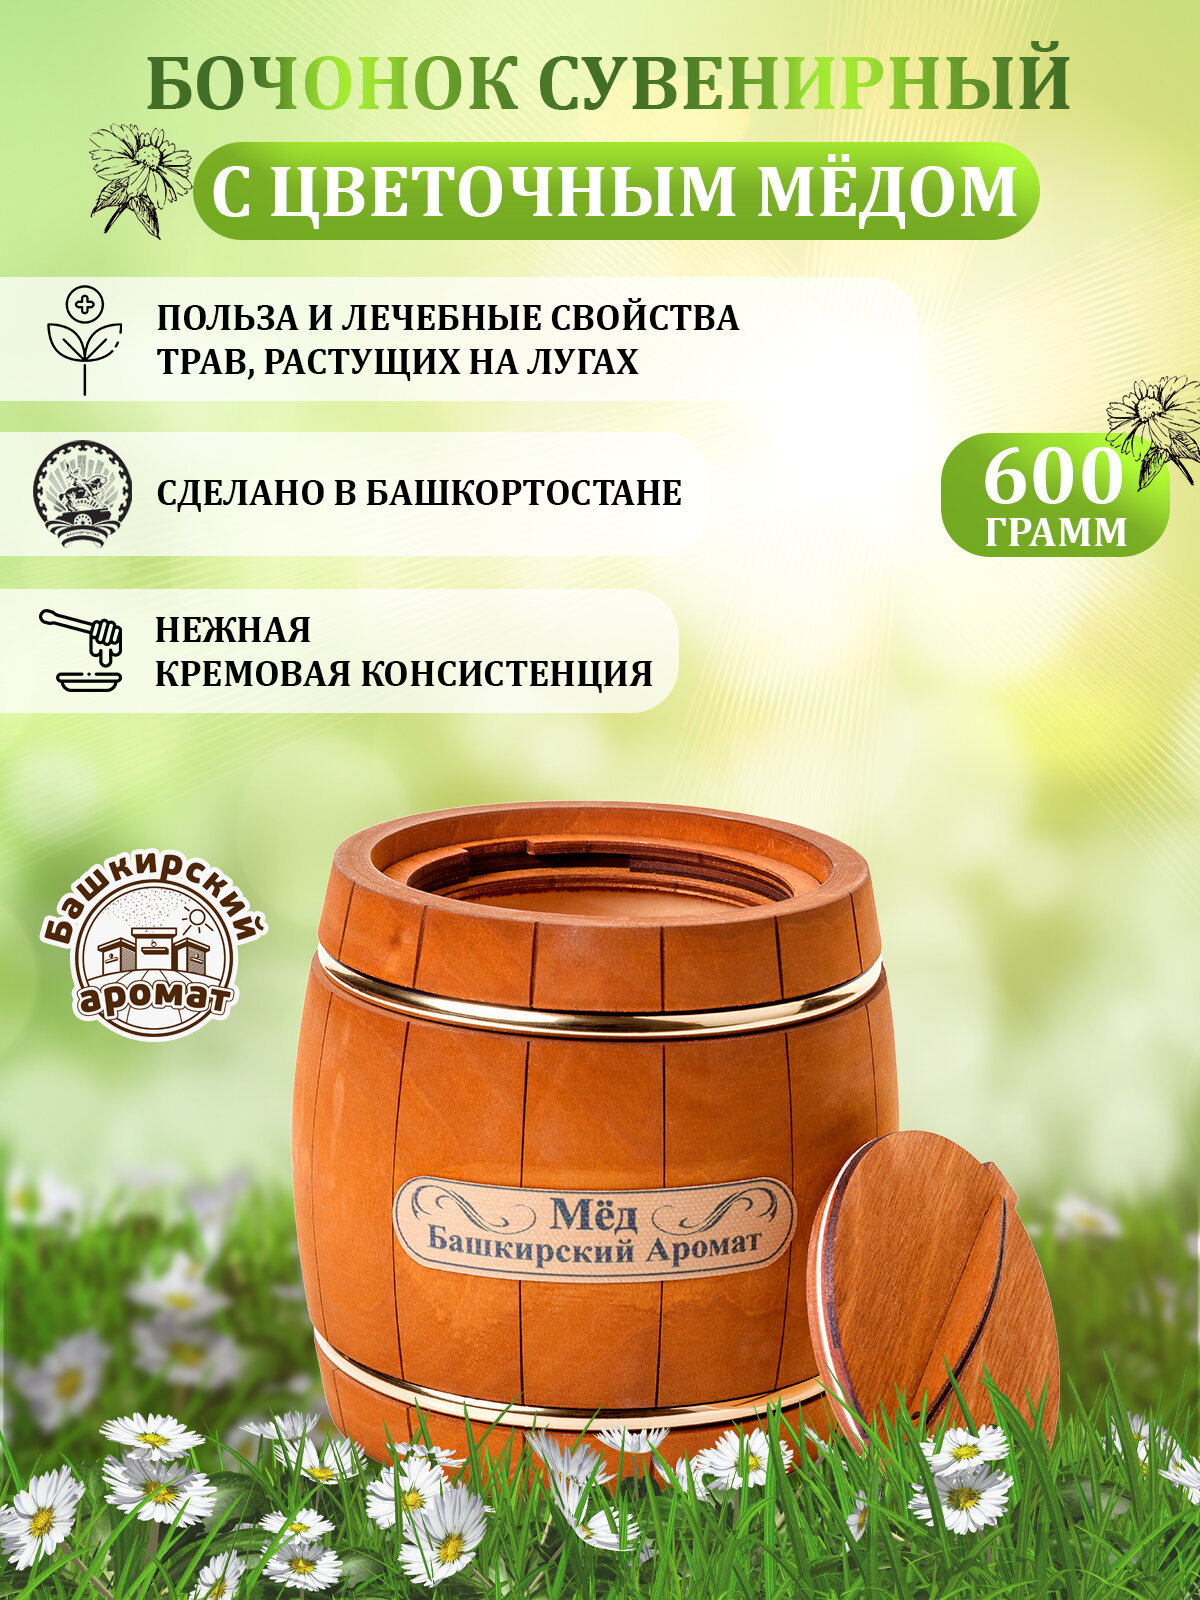 Мёд луговой башкирский в сувенирном деревянном бочонке 600 гр.